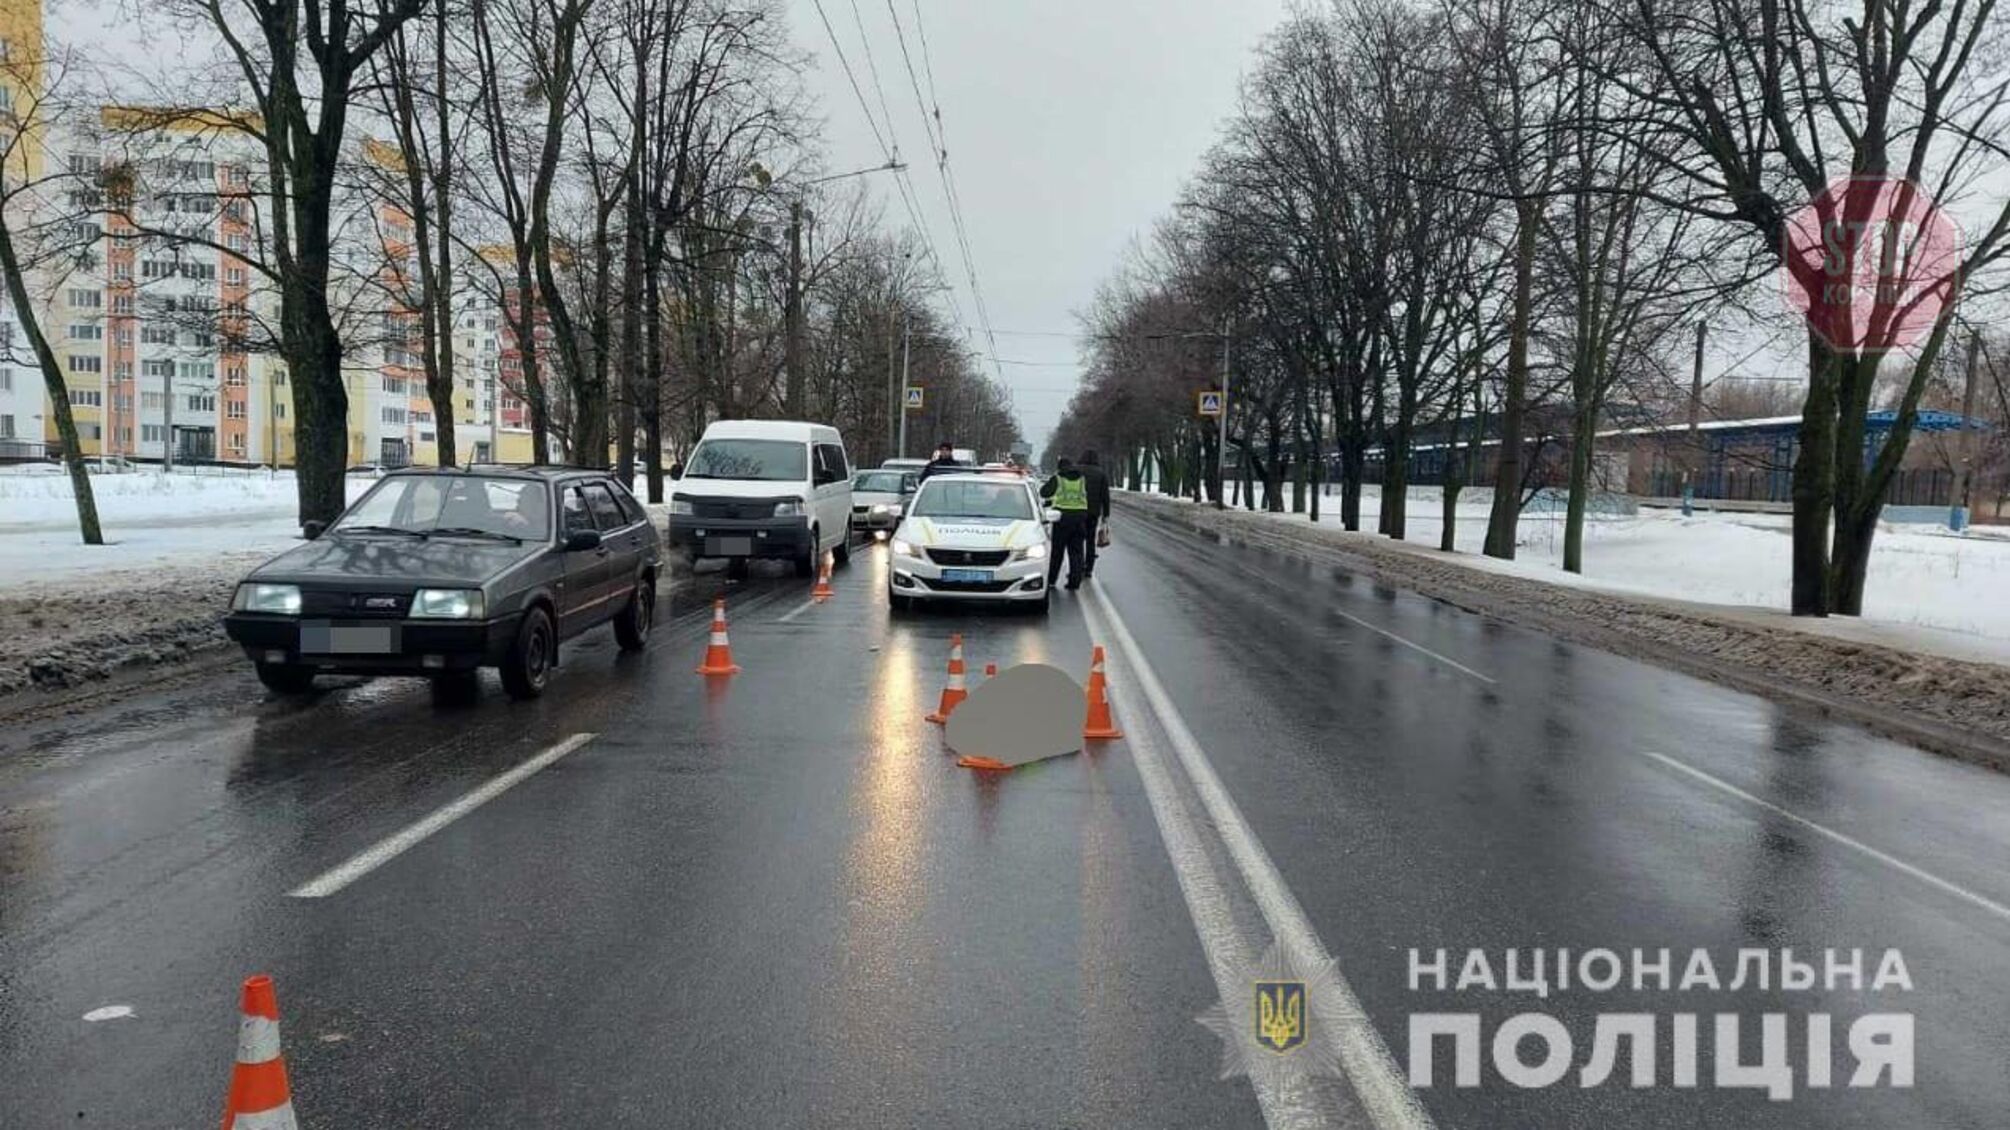 Очередное смертельное ДТП в Харькове: маршрутка сбила женщину на переходе